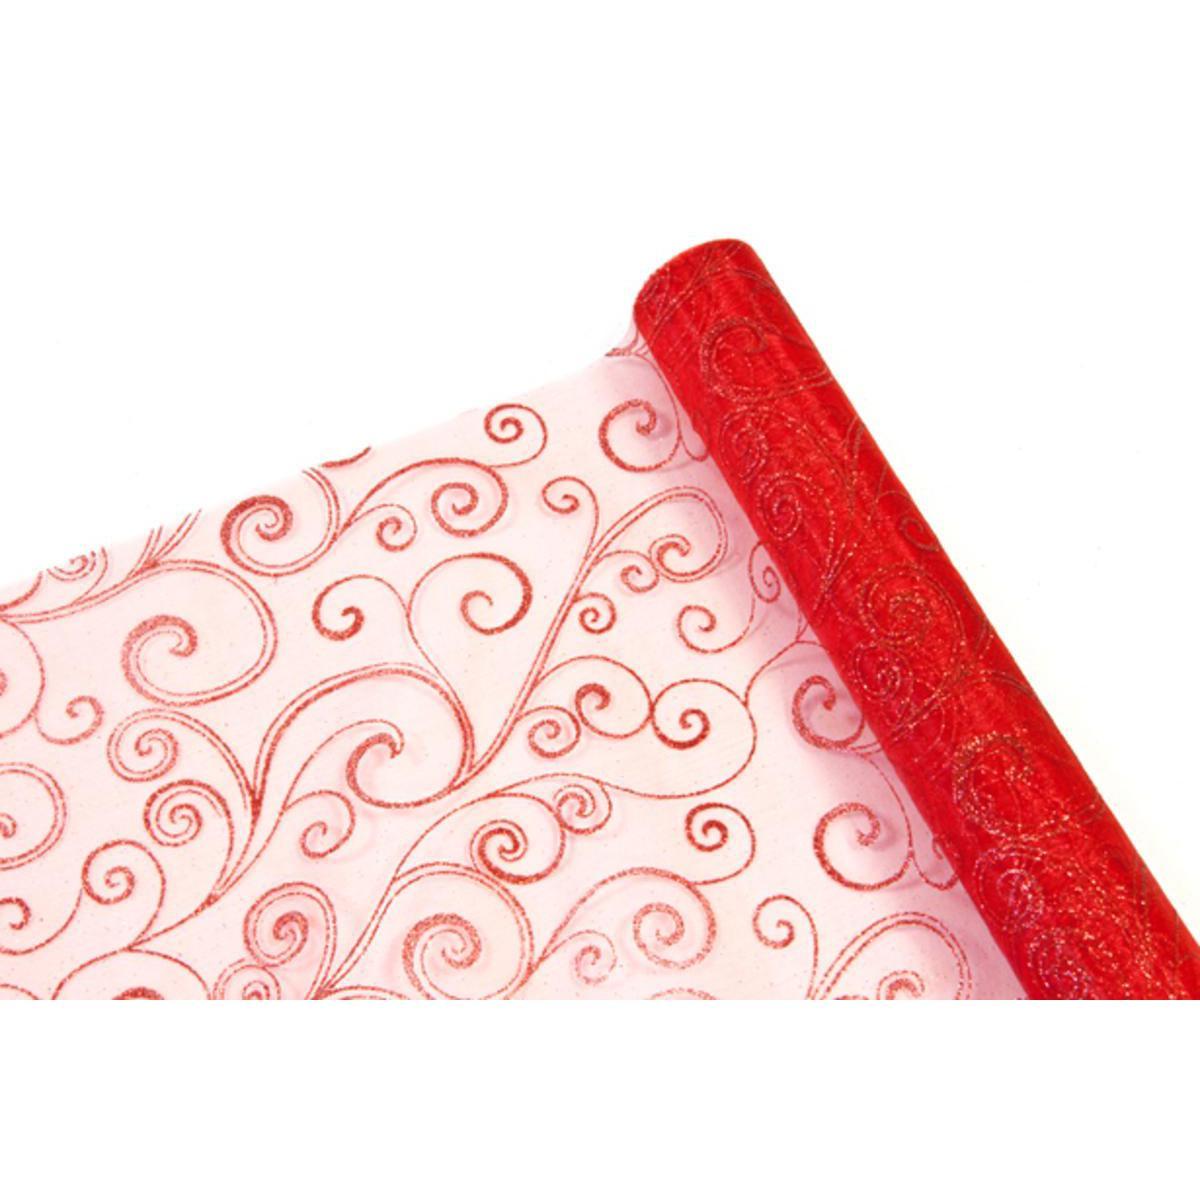 Rouleau pailleté motifs floraux - Organza - 28 cm x 5 m - Rouge